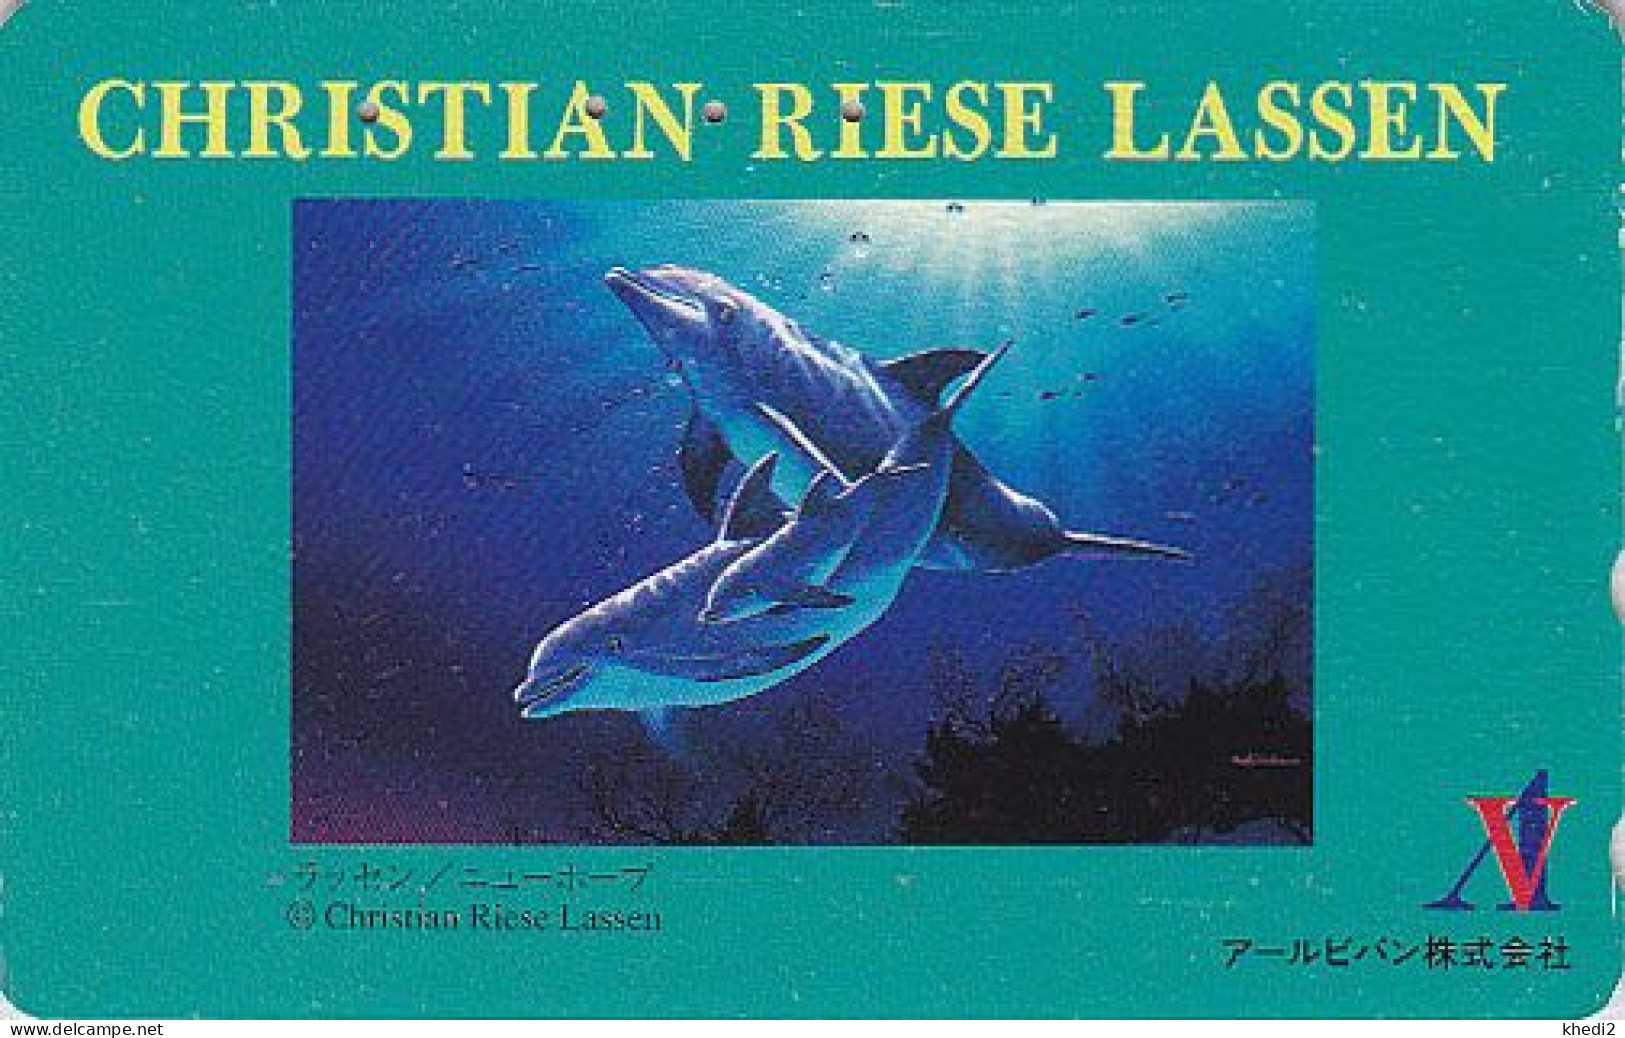 TC JAPON / 110-011 - Série Peinture CHRISTIAN RIESE LASSEN - ANIMAL DAUPHIN érotique - EROTIC DOLPHIN JAPAN Pc 02 - Delphine